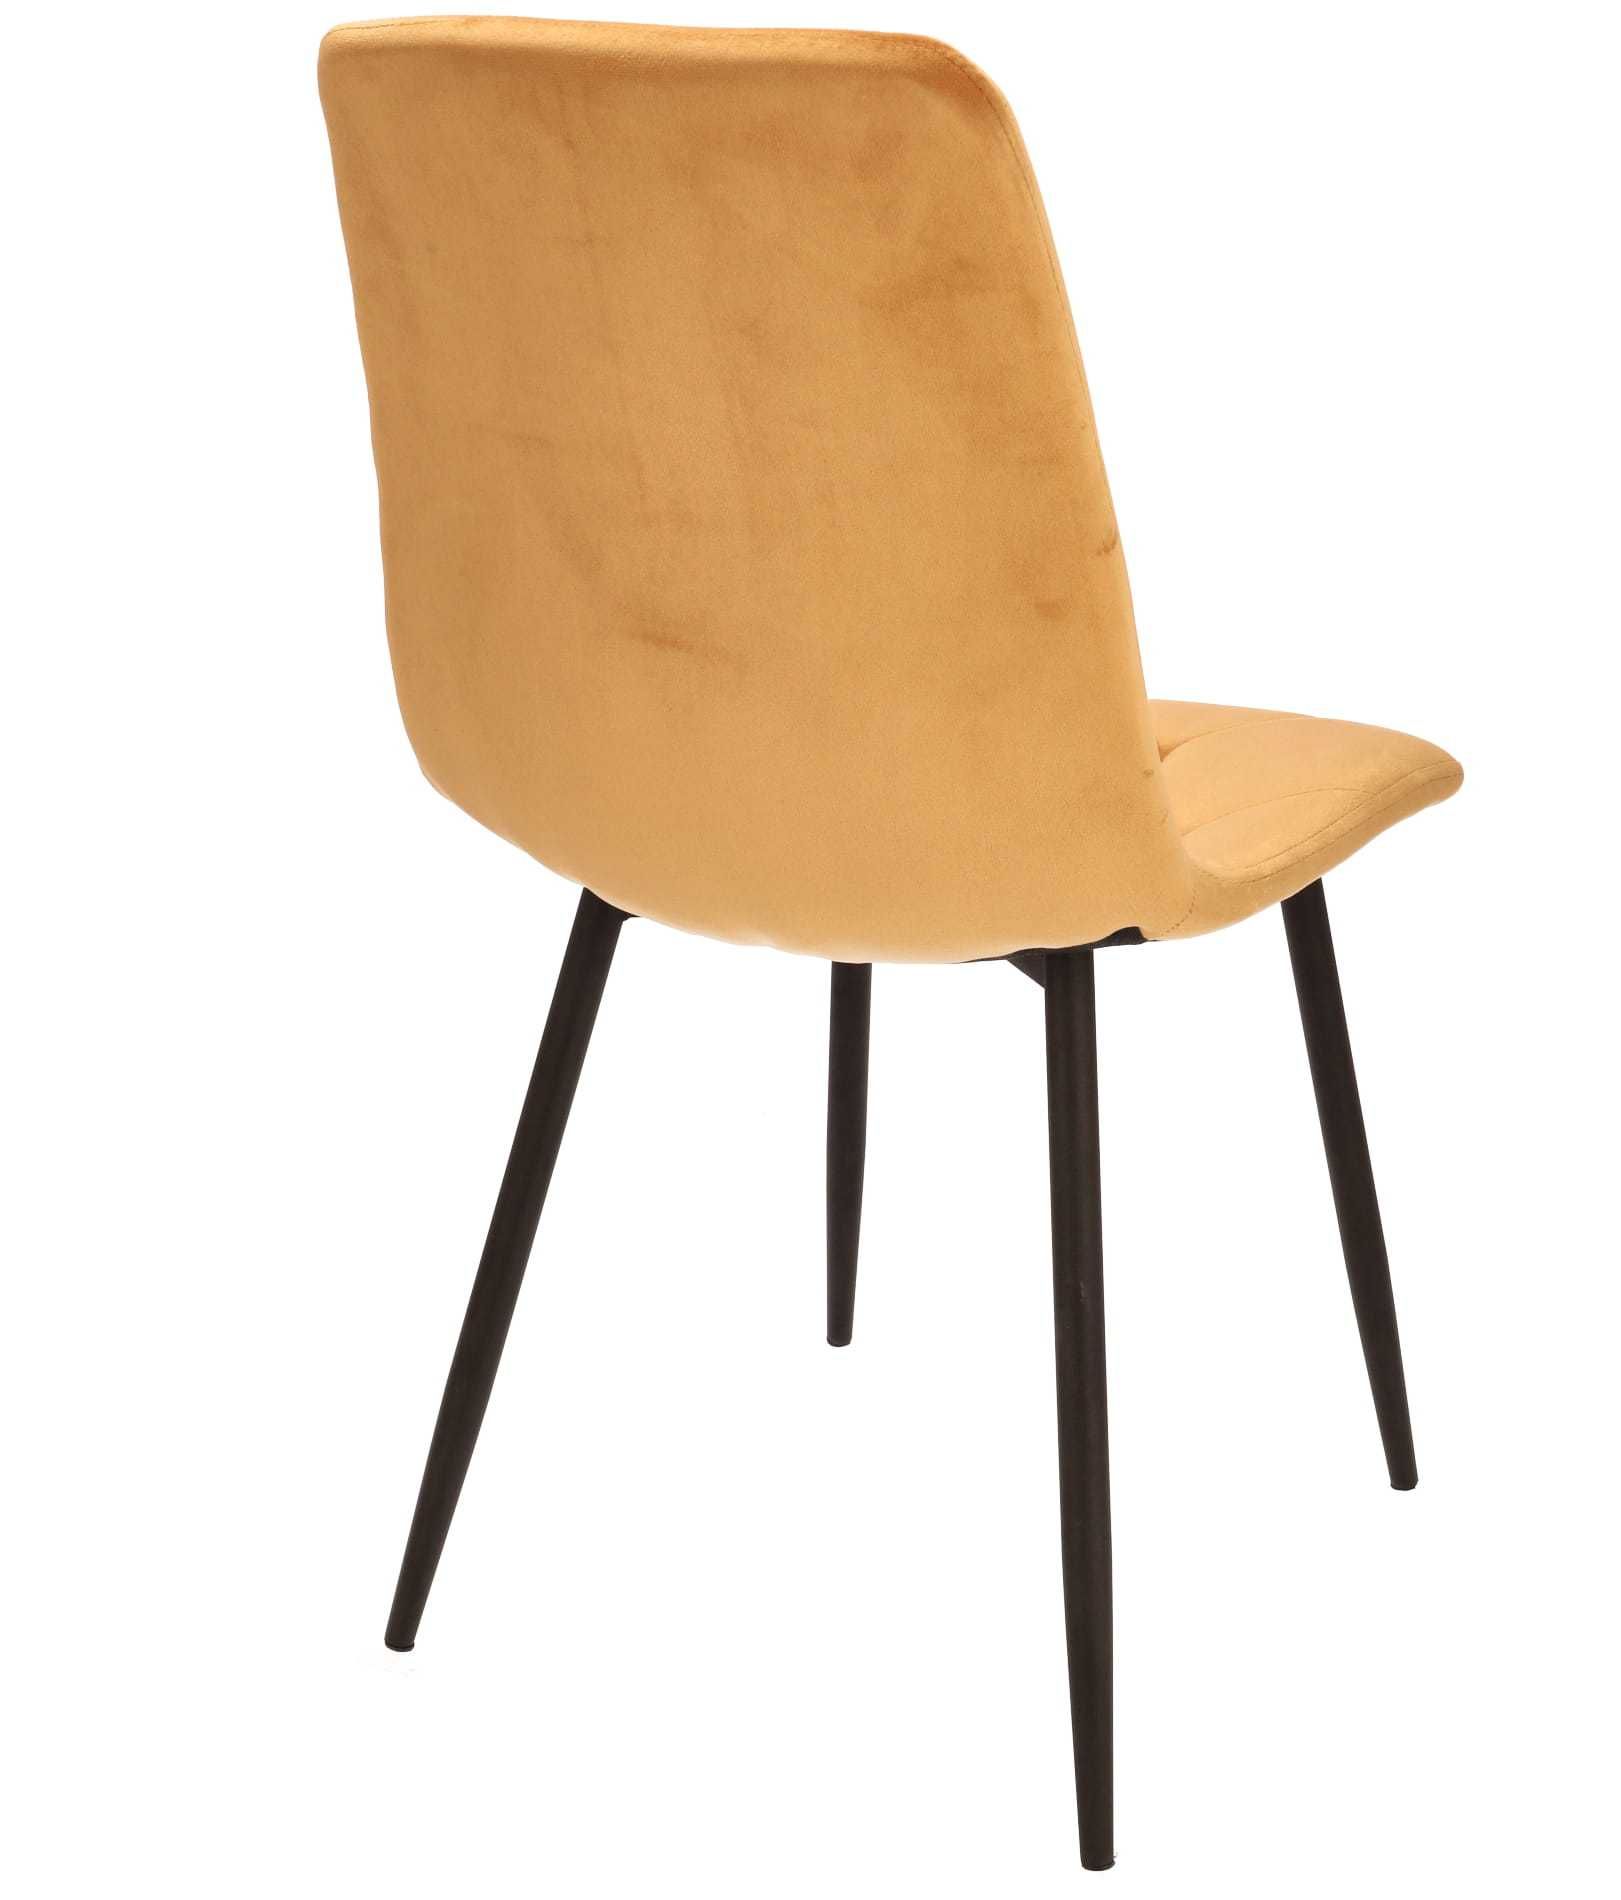 NOWE Krzesło do salonu jadalni tapicerowane welurem PORTO musztardowe